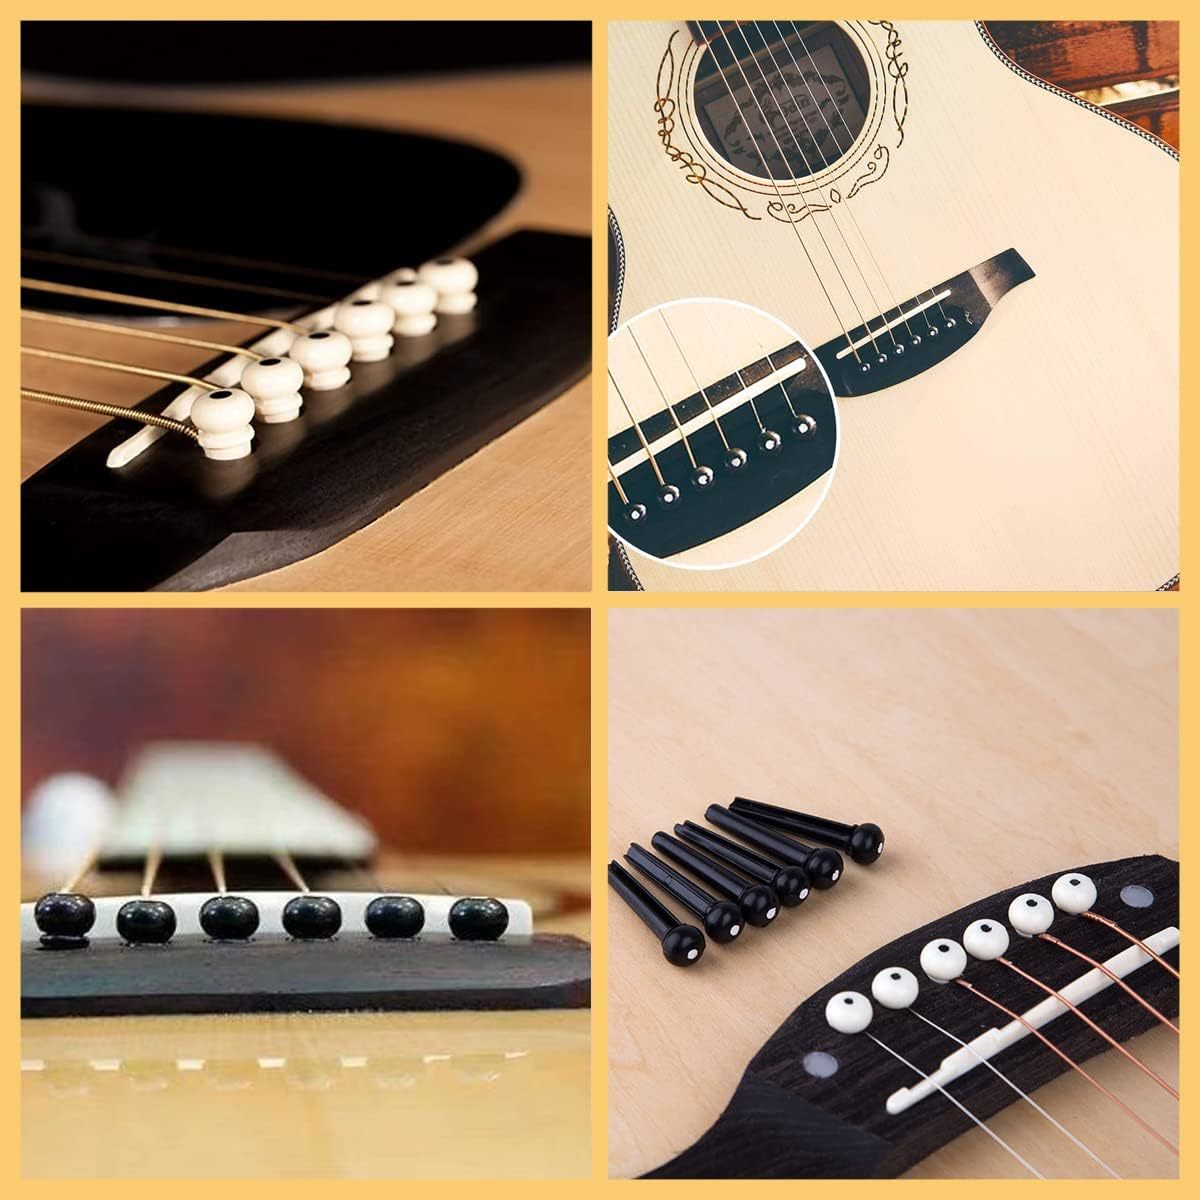 Alomejor ブリッジピン アコースティック フォークギター用 エボニー製 ブラック